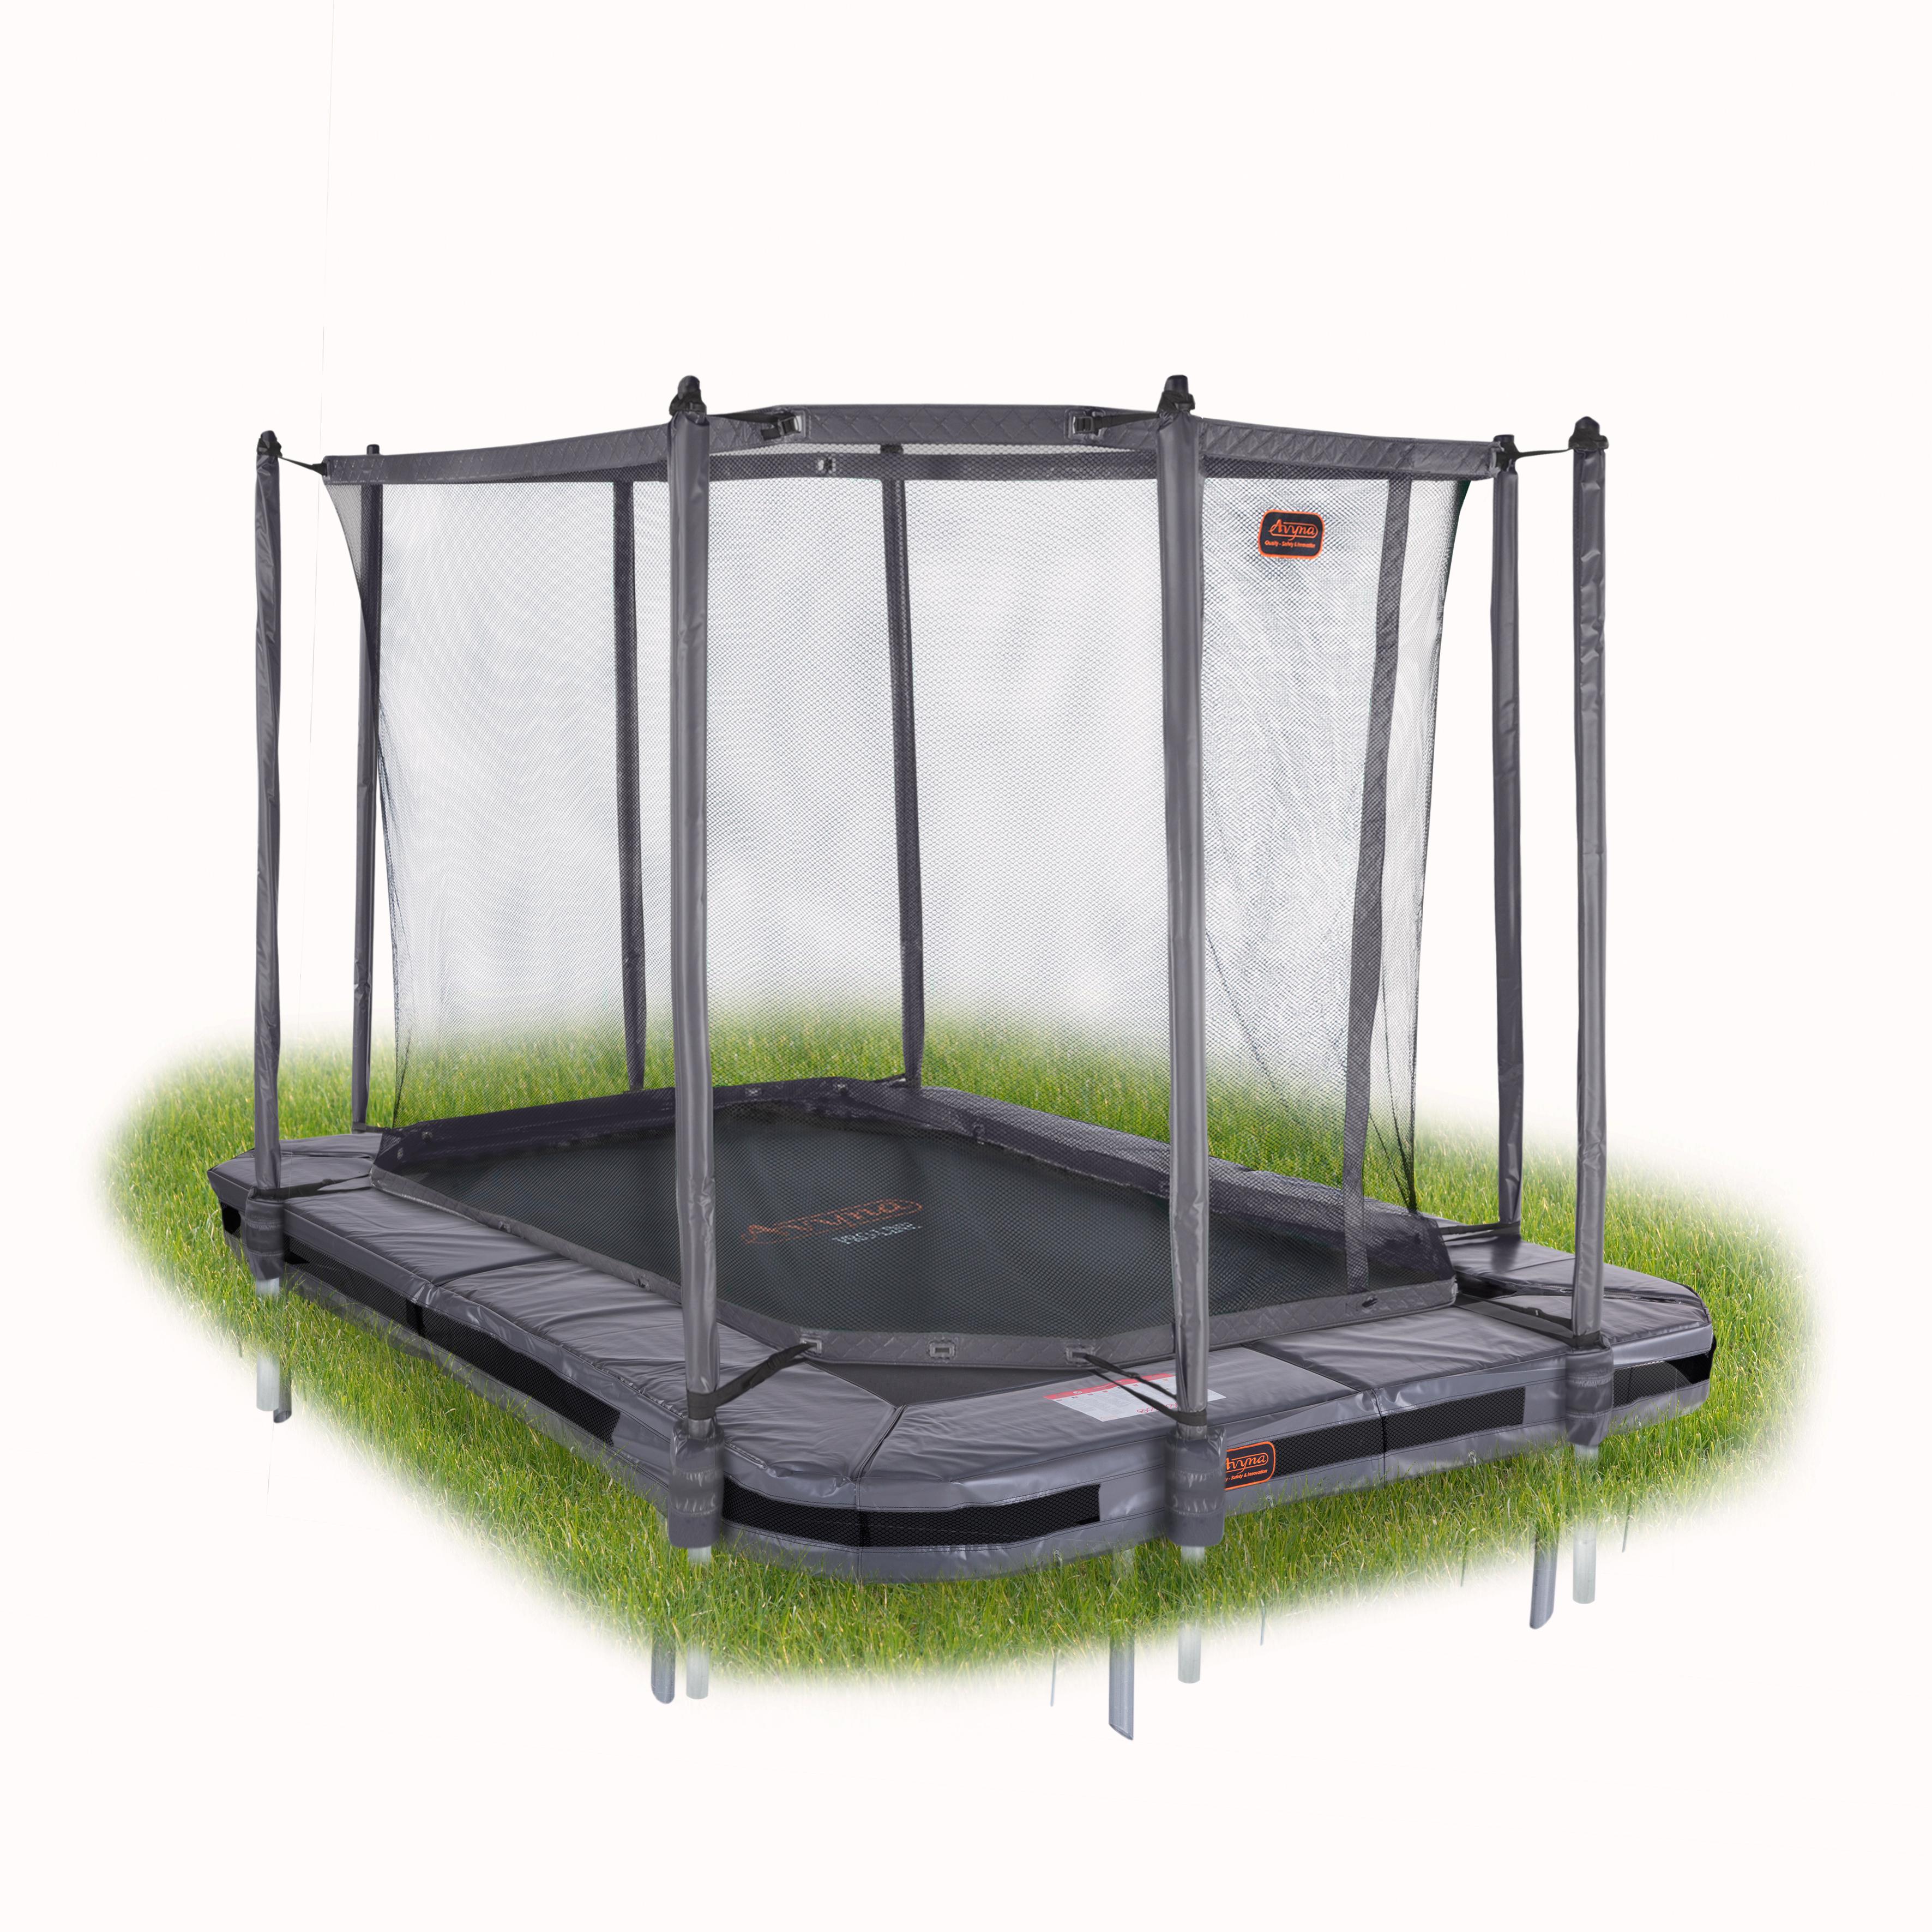 Rechthoekige inbouw trampolines veiligheidsnet Page 2 | Trampolines bij trampolineverkoop